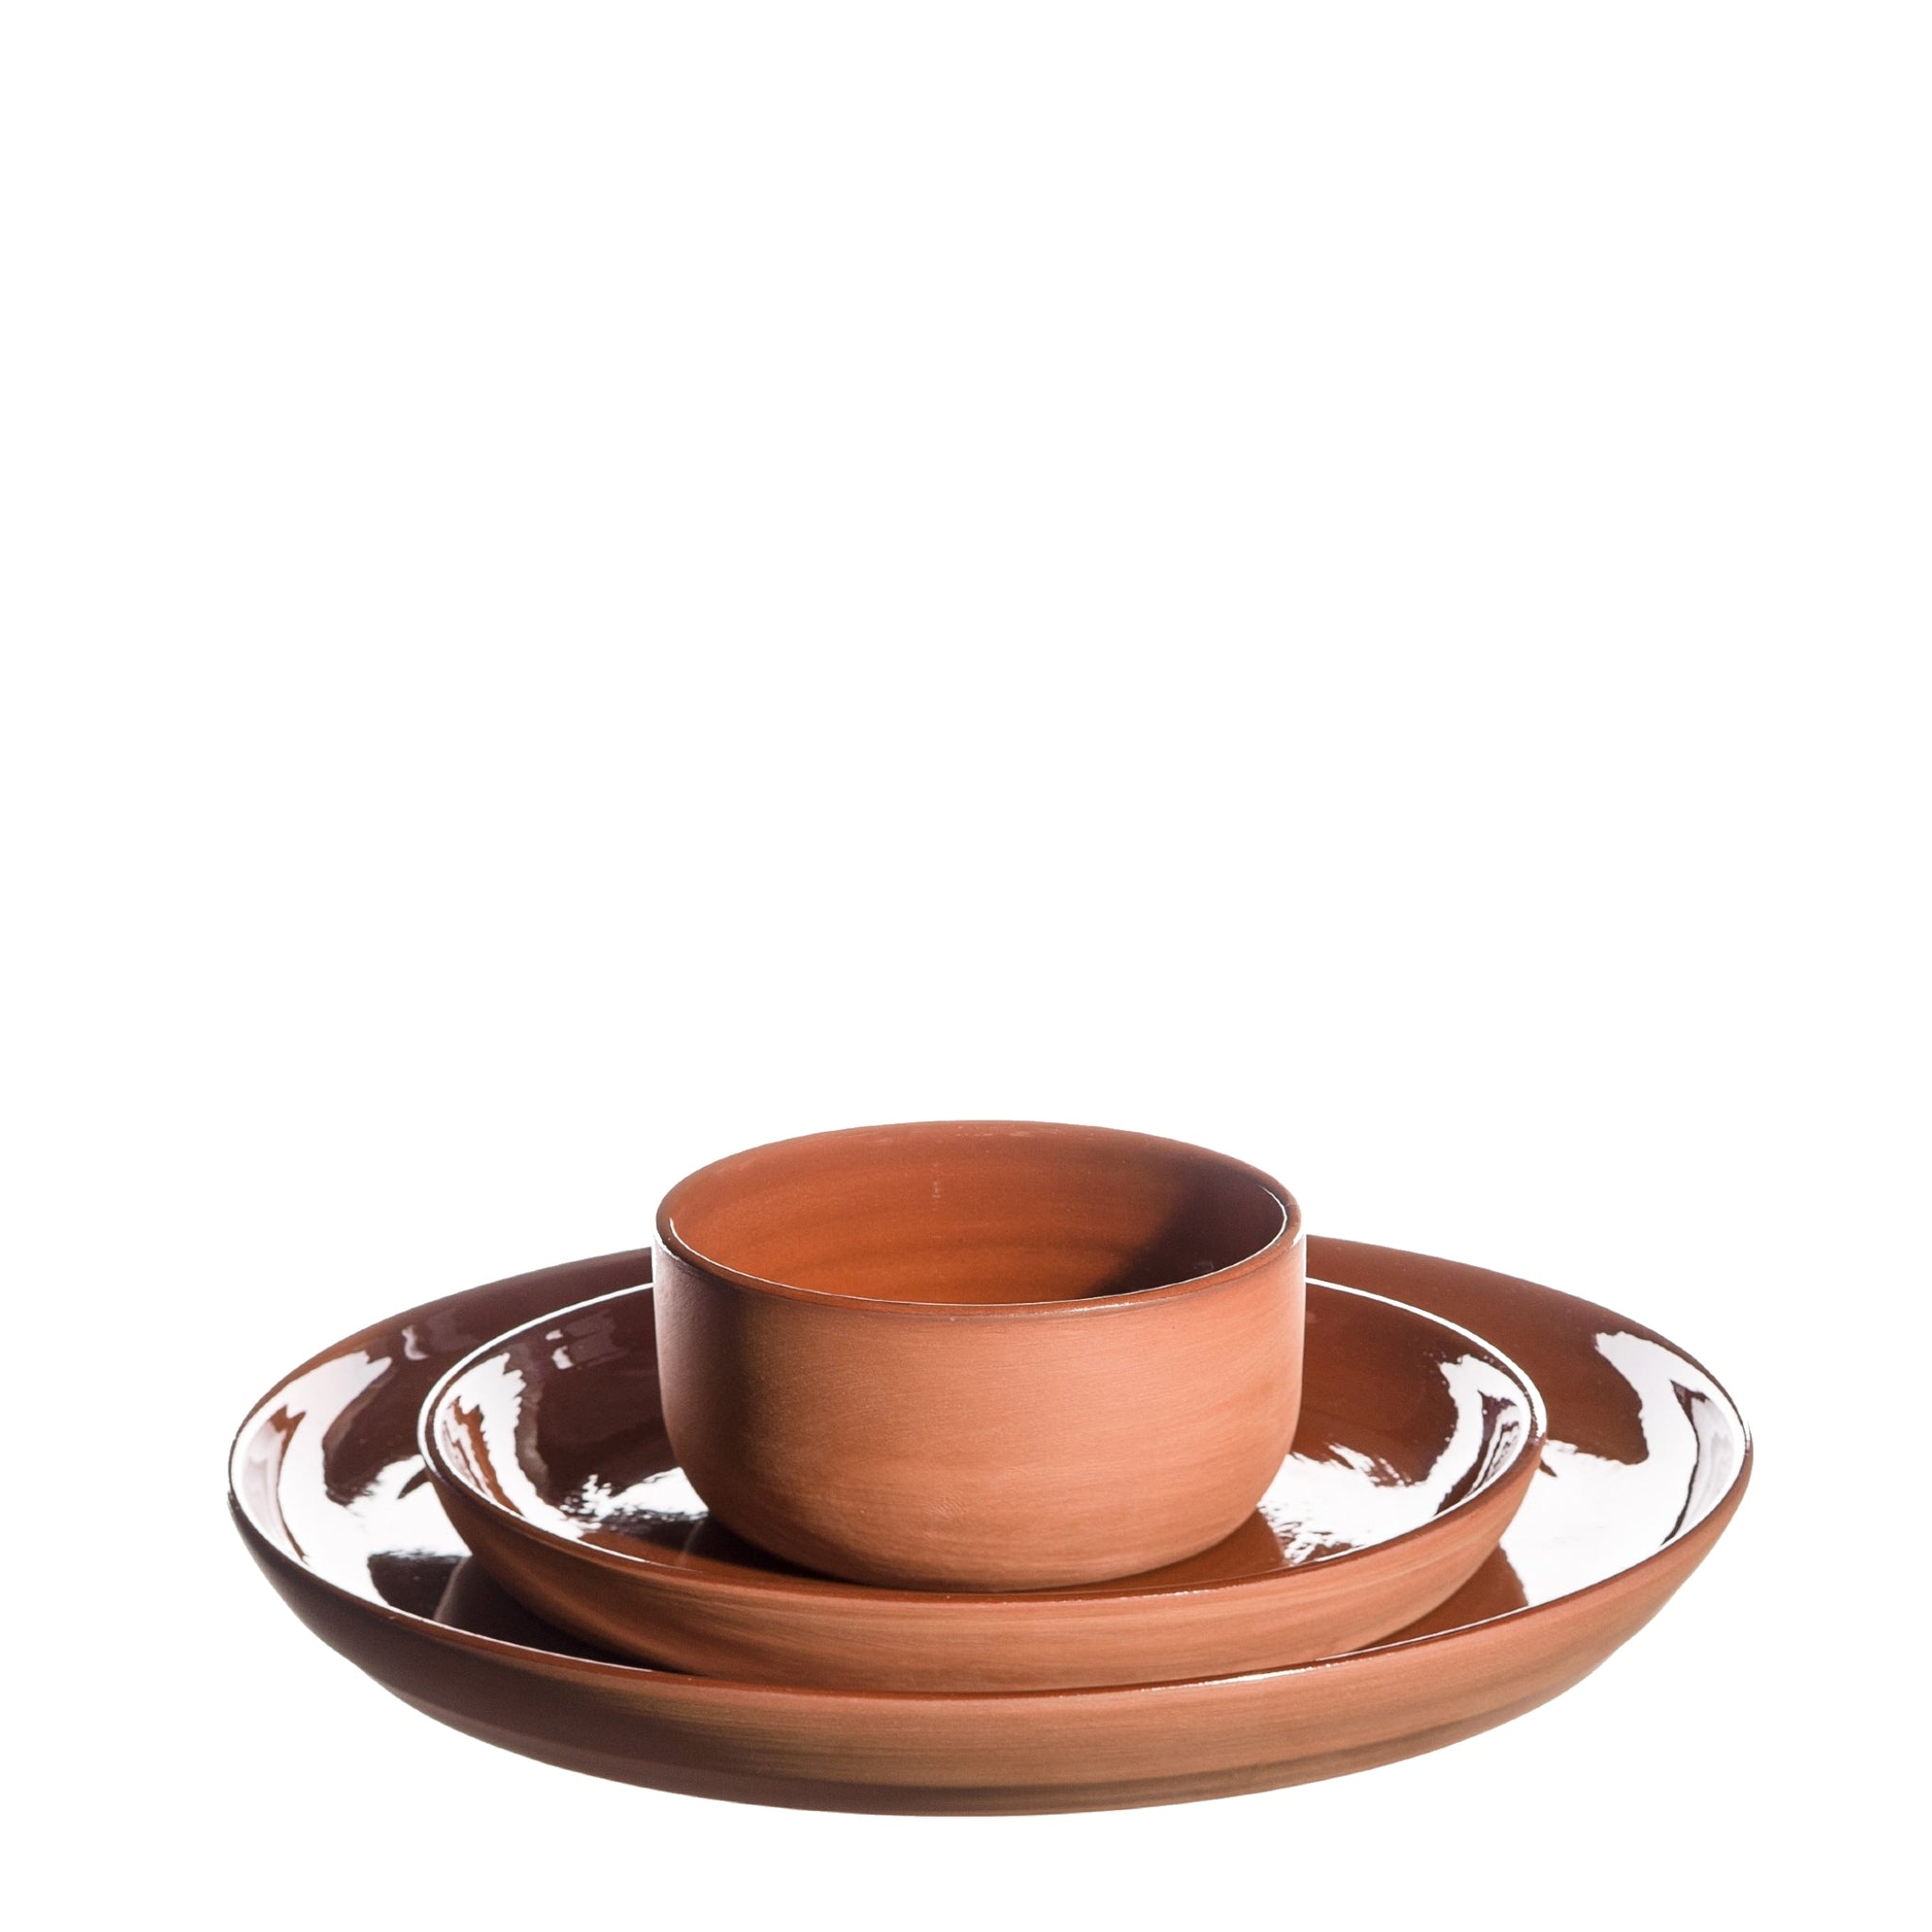 Håndlavede keramik tallerkner, 2 størrelser, frokost og middagstallerken og ramekin fra Atelier Bernex, Oliviers & Co